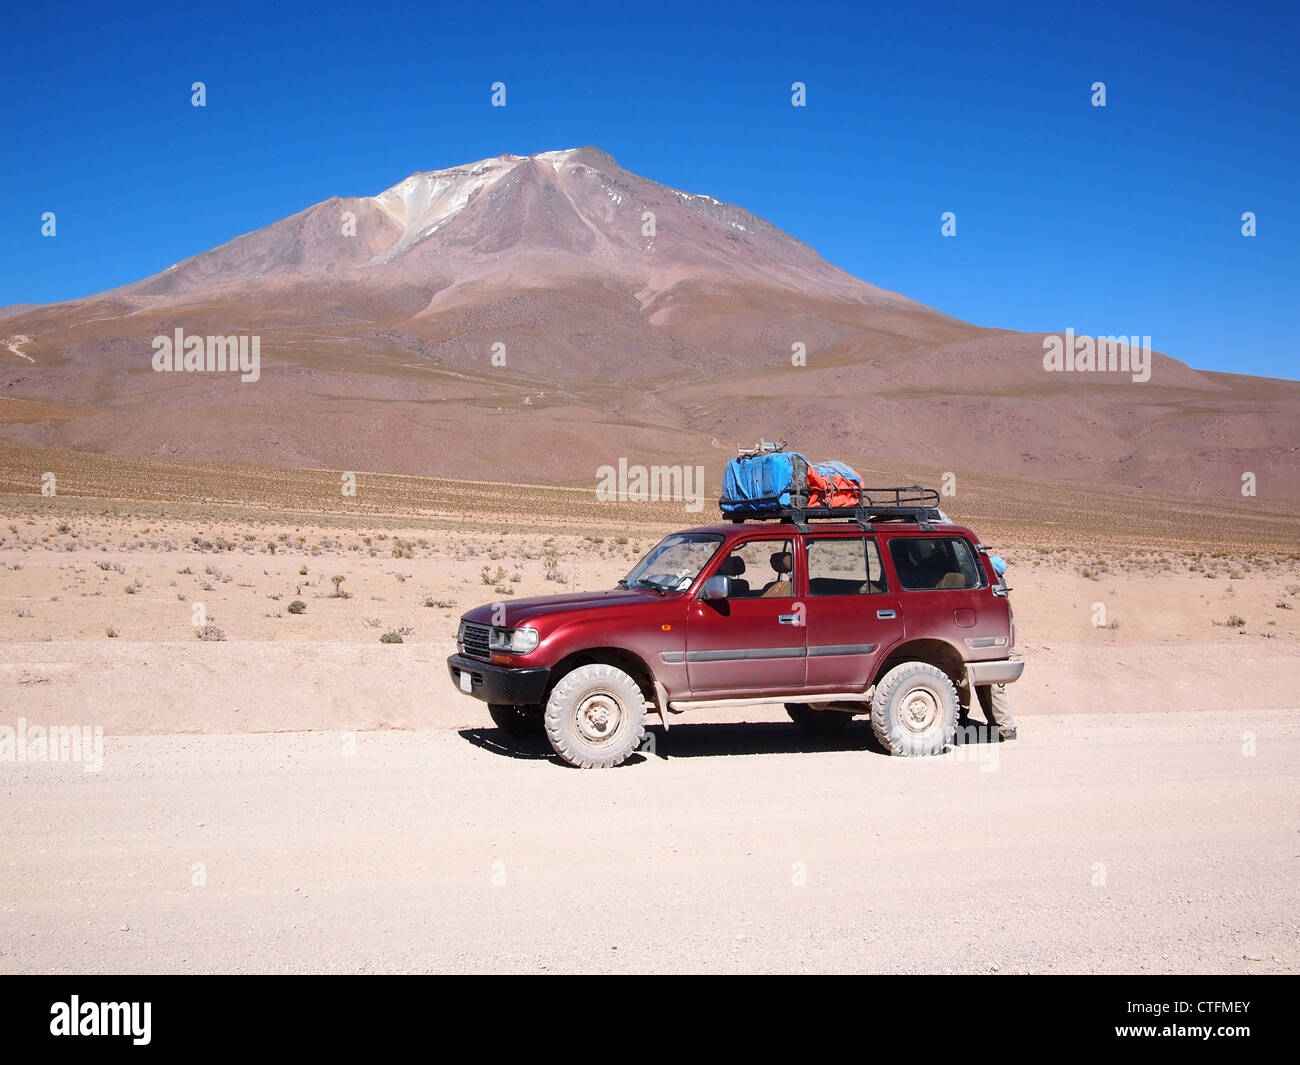 Touristischen Allradfahrzeug für mehrere touristische Tagestour in der Atacama-Wüste in Bolivien vor einem Vulkan verwendet. Stockfoto